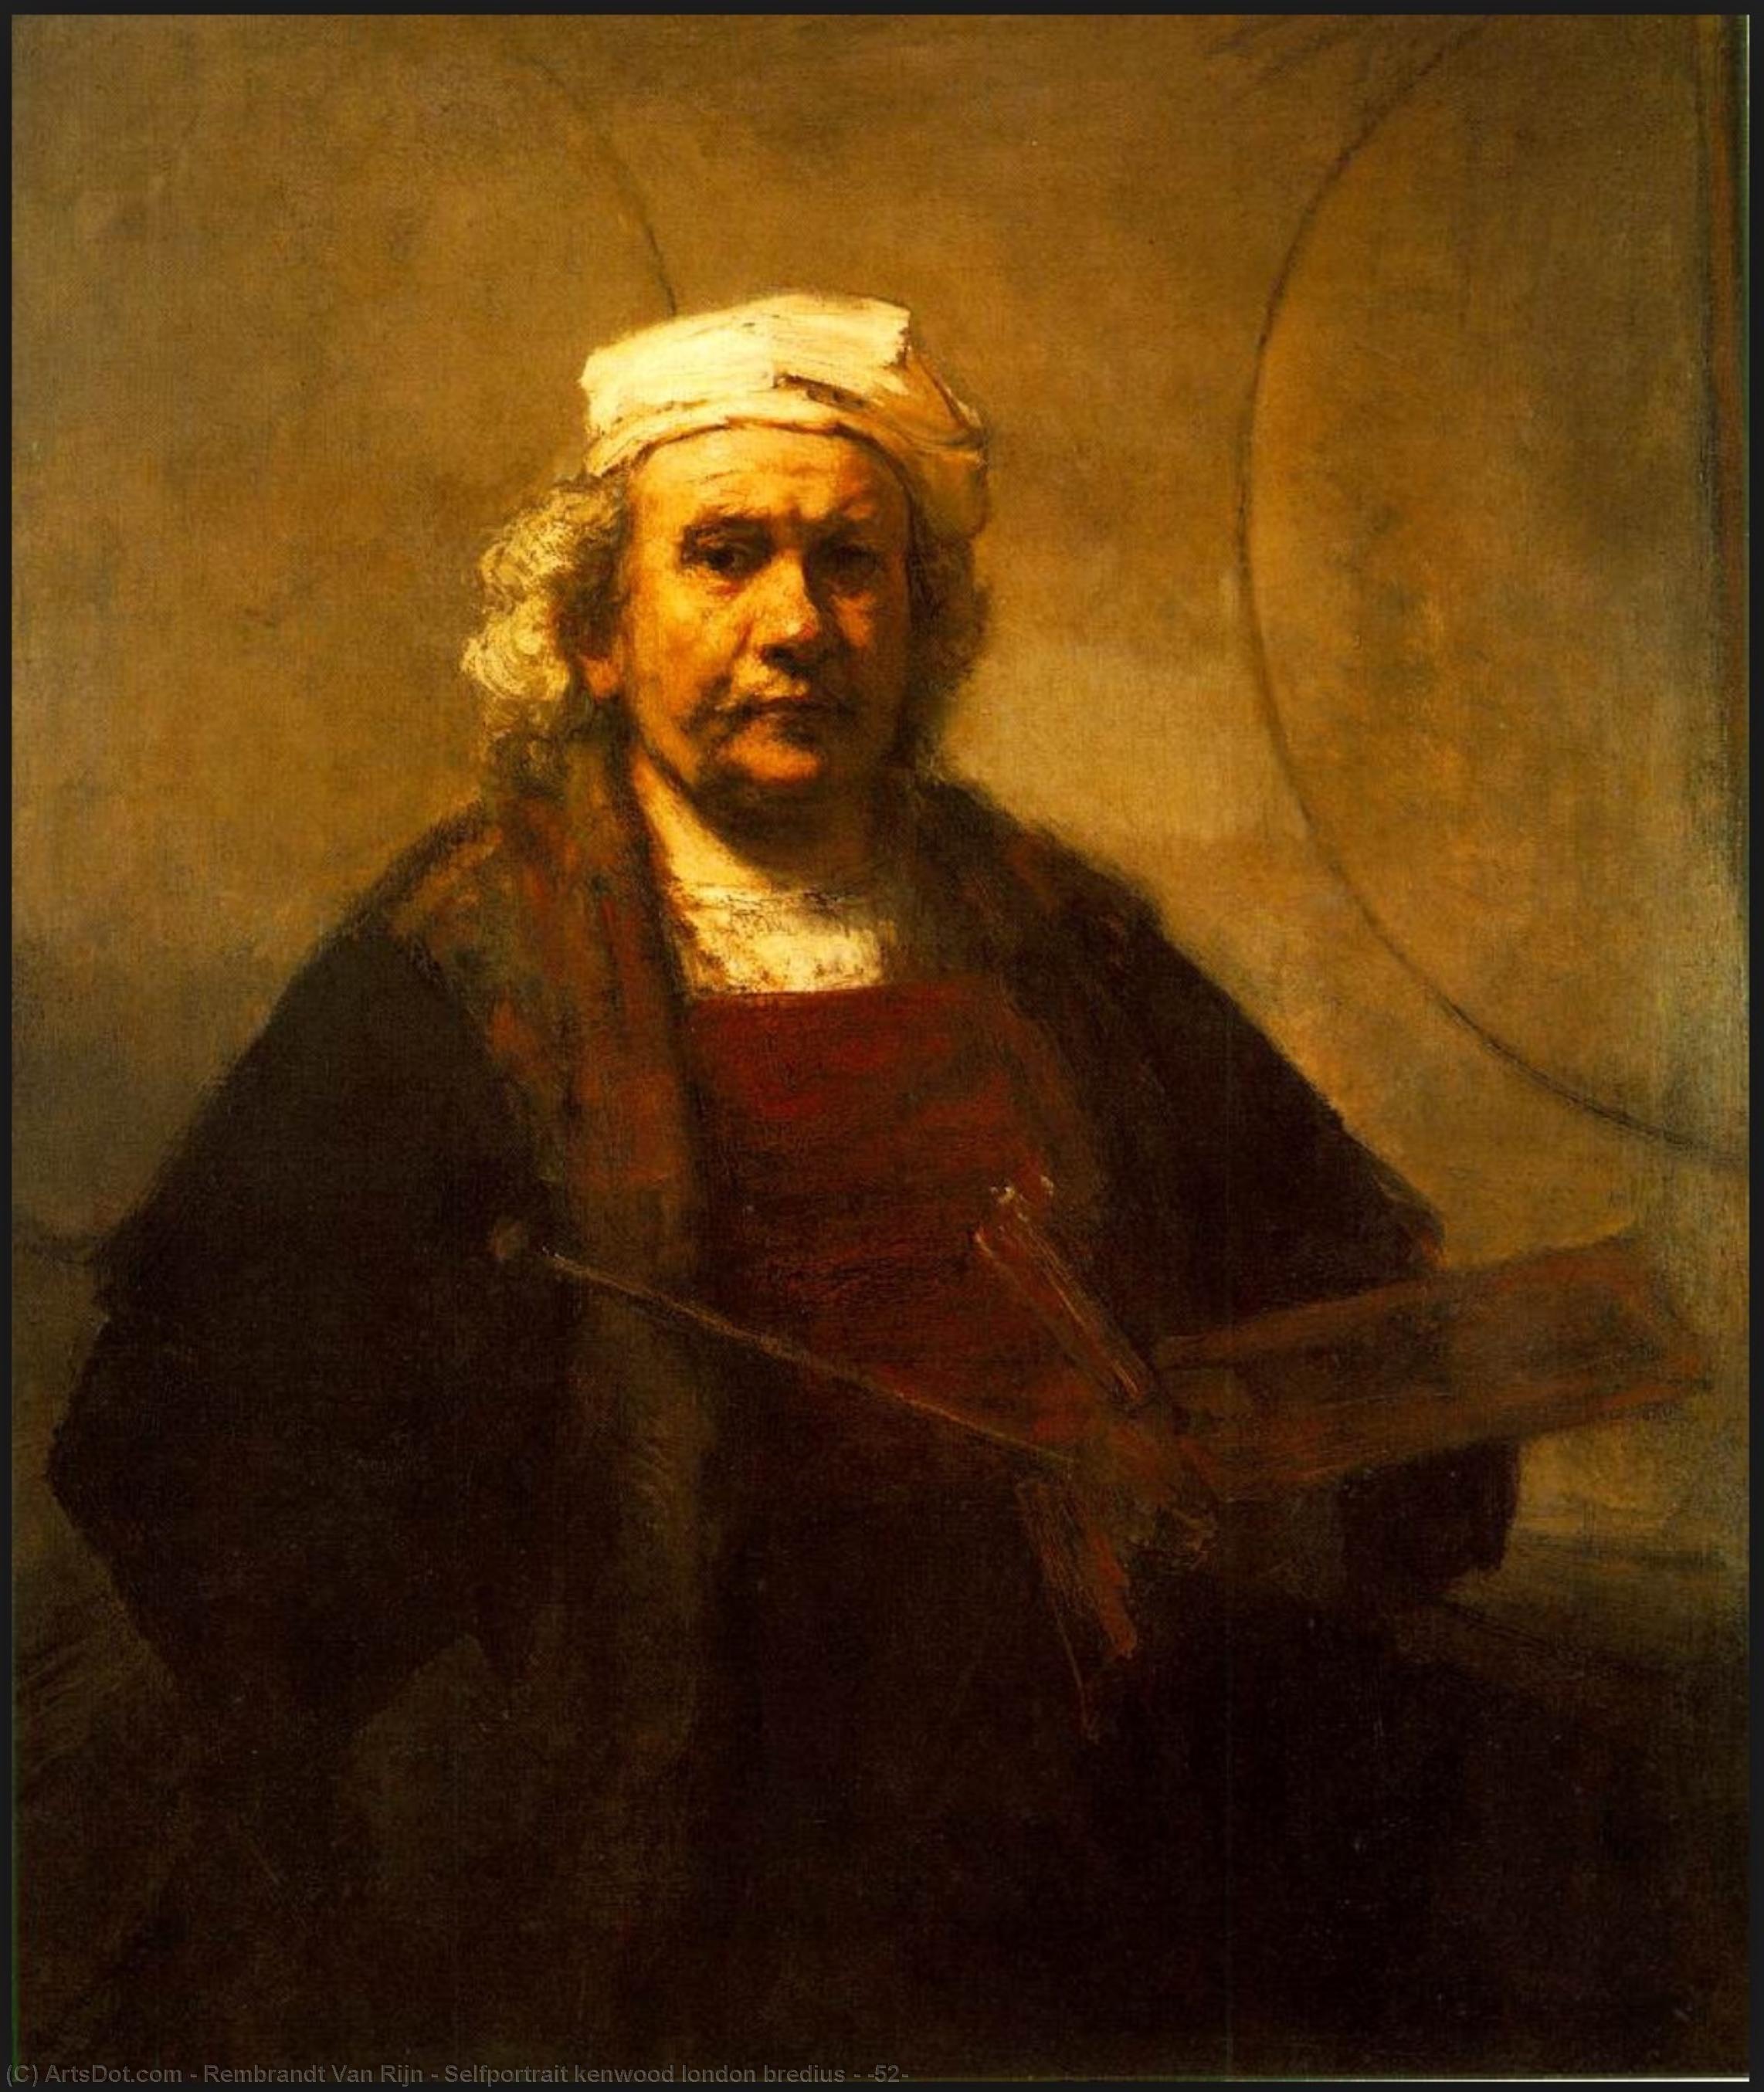 Wikioo.org - Bách khoa toàn thư về mỹ thuật - Vẽ tranh, Tác phẩm nghệ thuật Rembrandt Van Rijn - Selfportrait kenwood london bredius - (52)